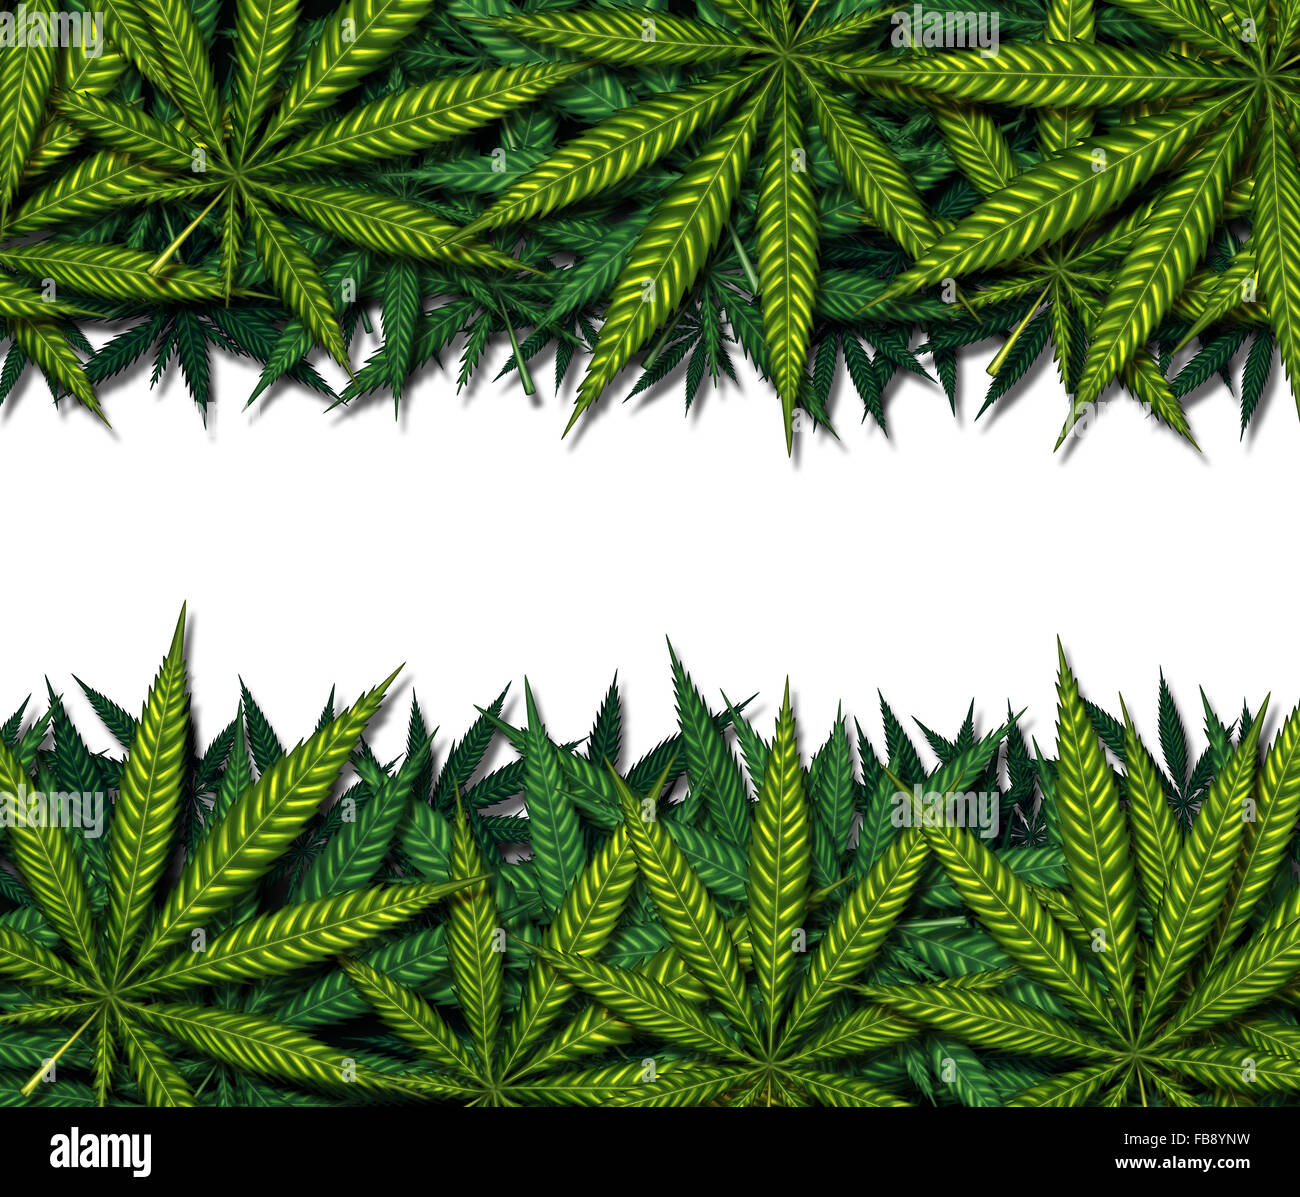 La marijuana design di frontiera su uno sfondo bianco come un simbolo di medicinali della pentola o erbaccia medico come un gruppo di foglie verdi come un farmaco di cannabis simbolo di comunicazione. Foto Stock